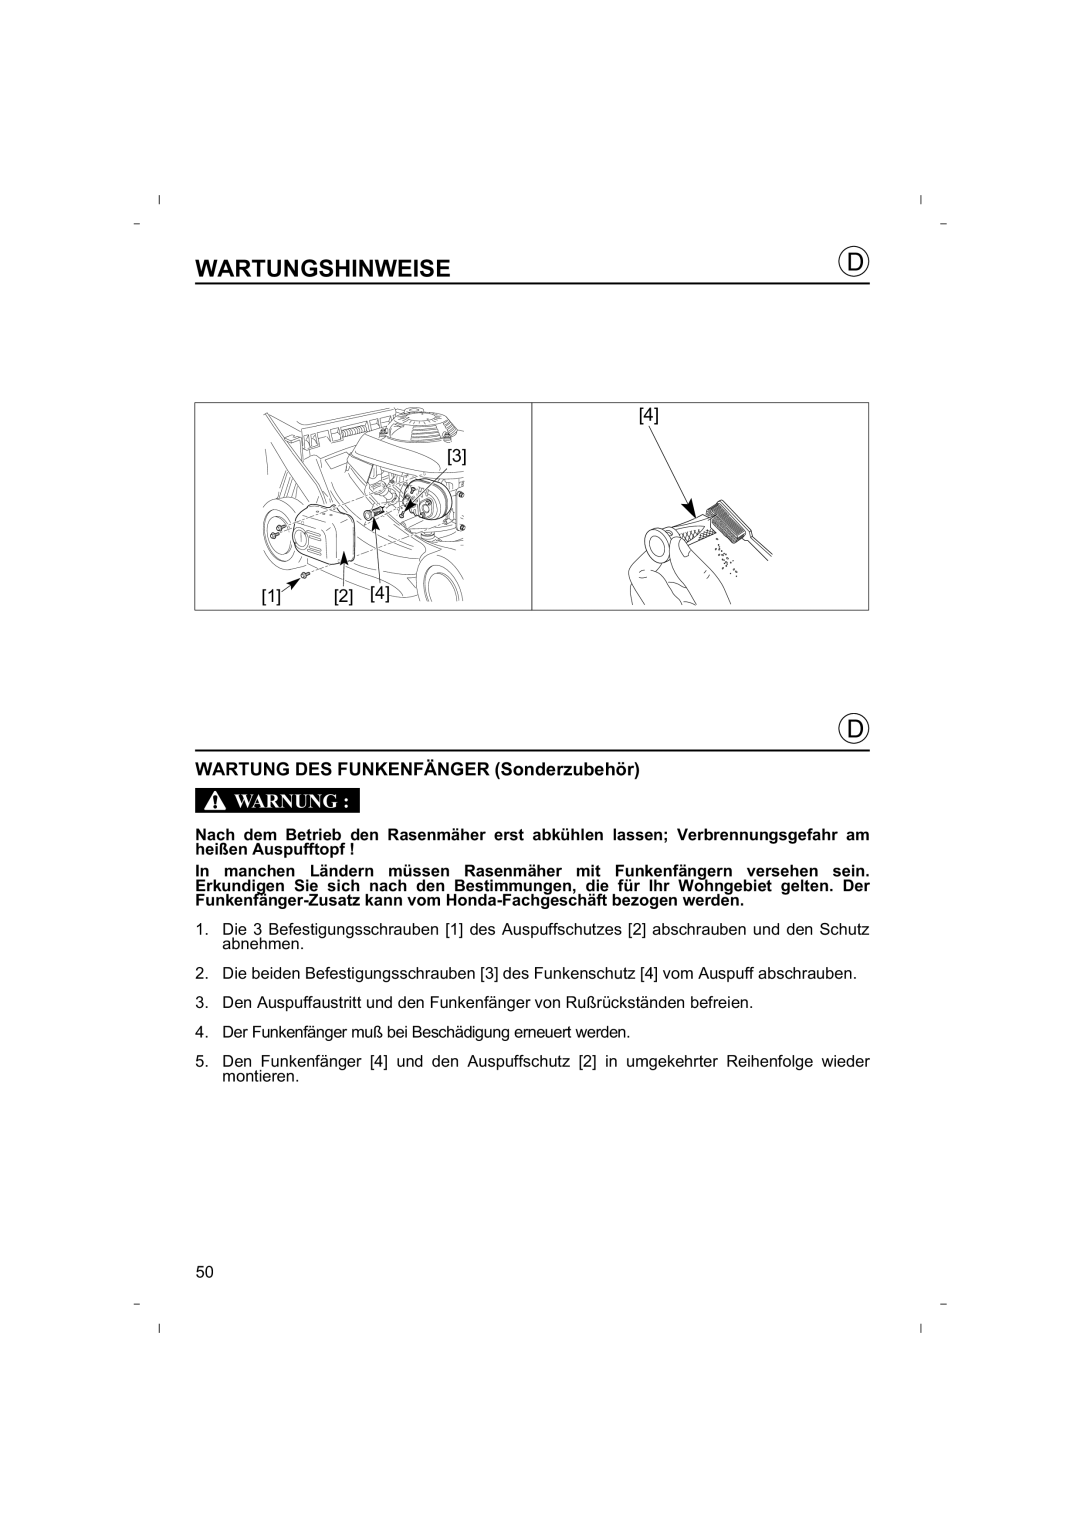 Honda Power Equipment HRB425C owner manual WARTUNG DES FUNKENFÄNGER Sonderzubehör, Wartungshinweise, Warnung 